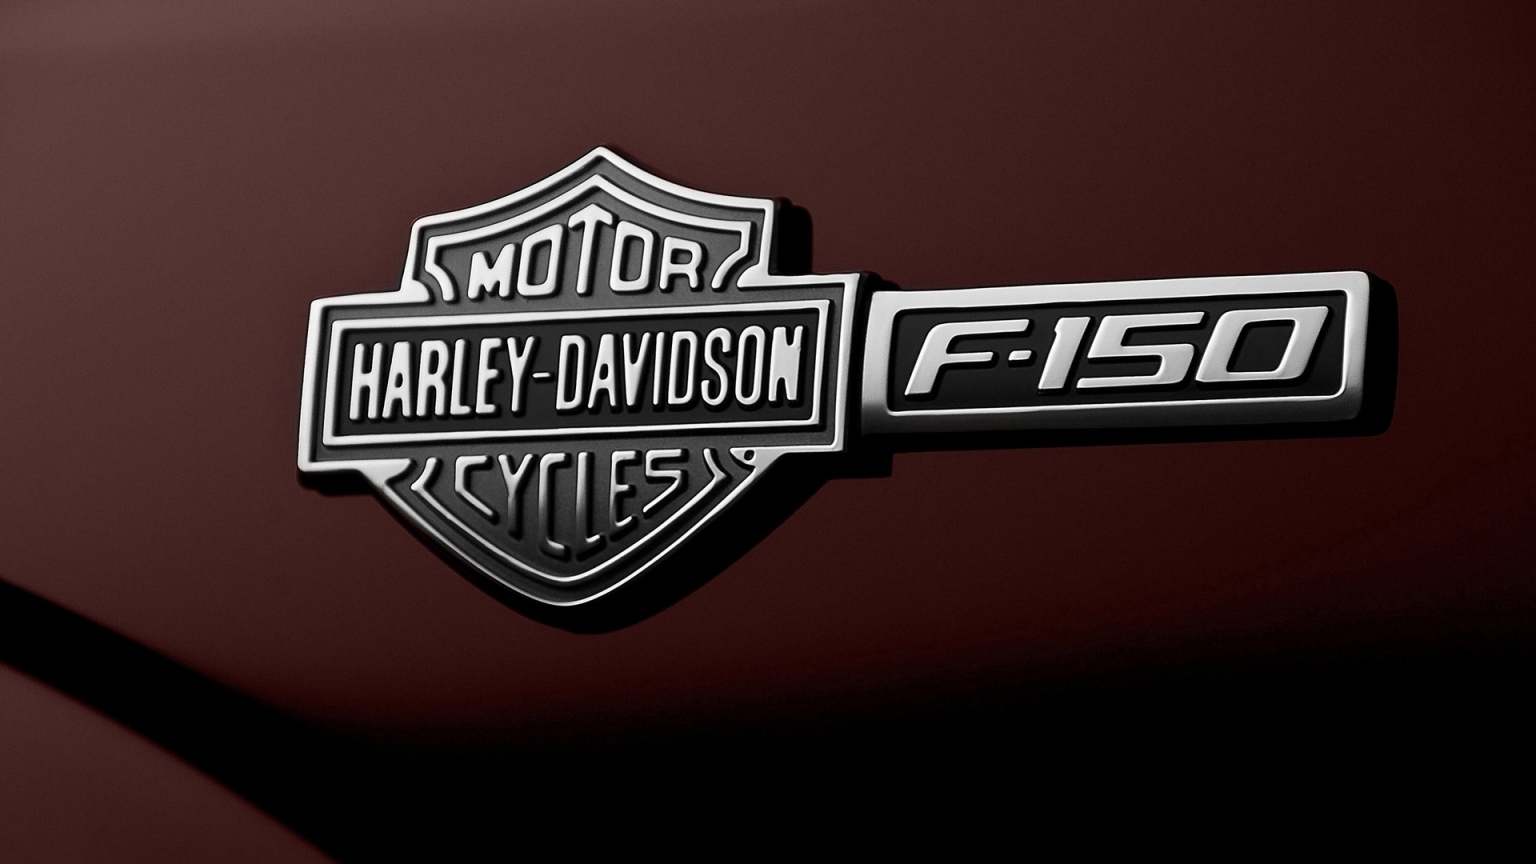 Ford F-150 Harley-Davidson Emblem for 1536 x 864 HDTV resolution